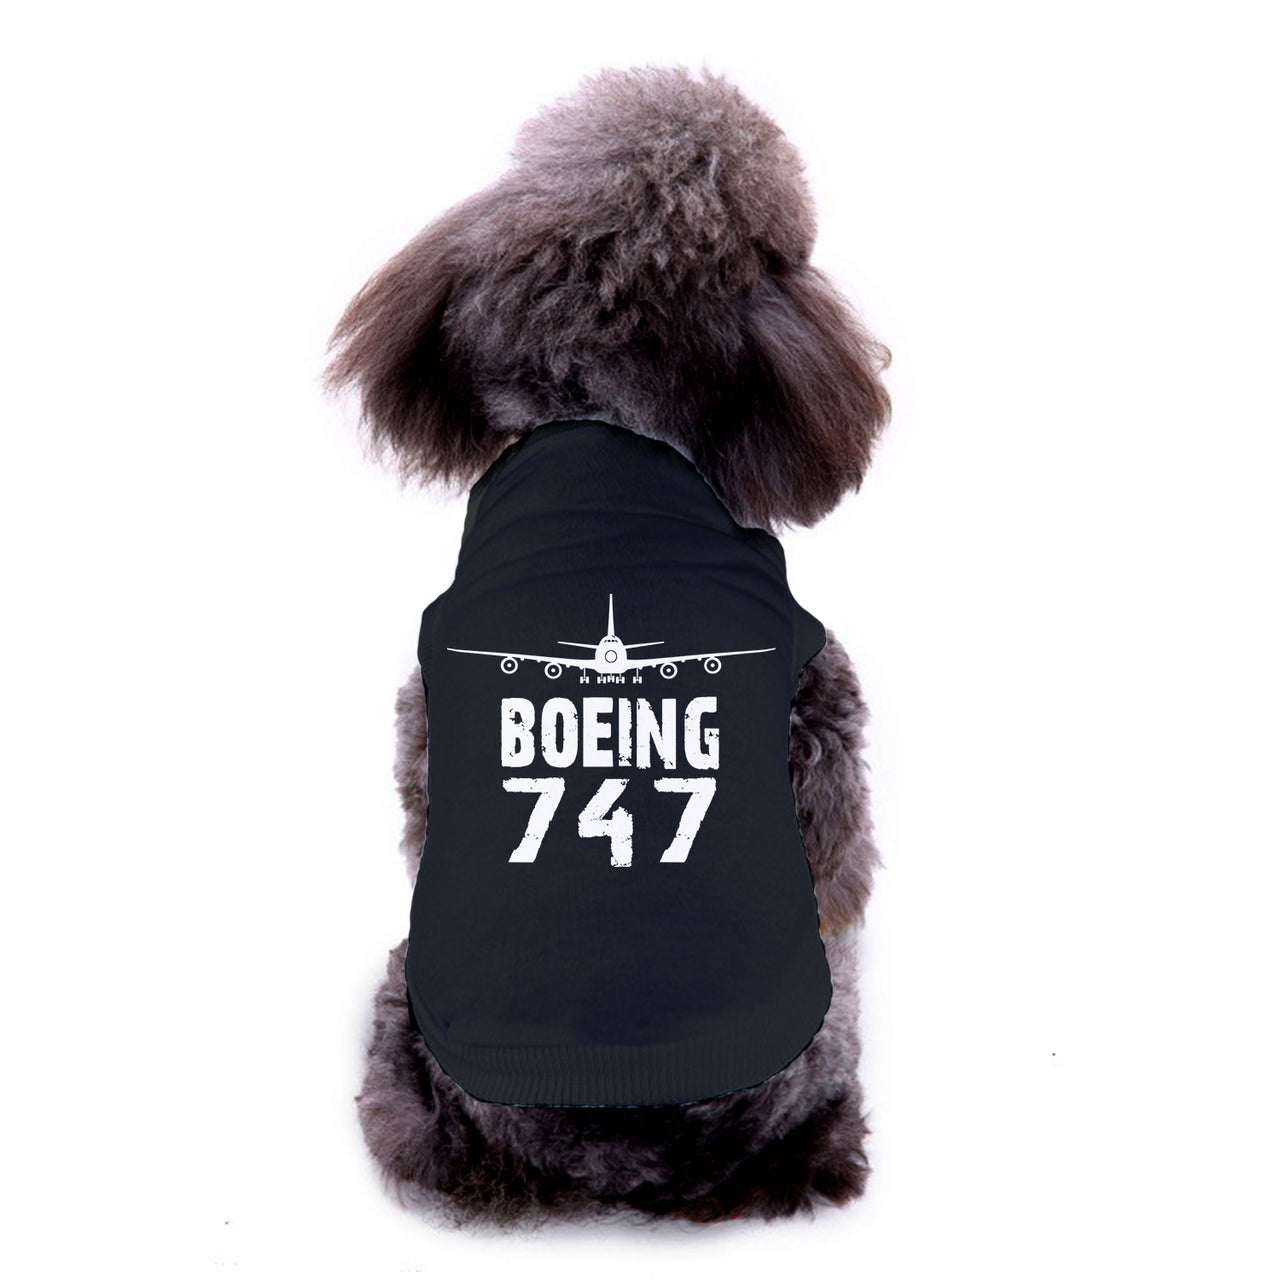 Boeing 747 & Plane Designed Dog Pet Vests